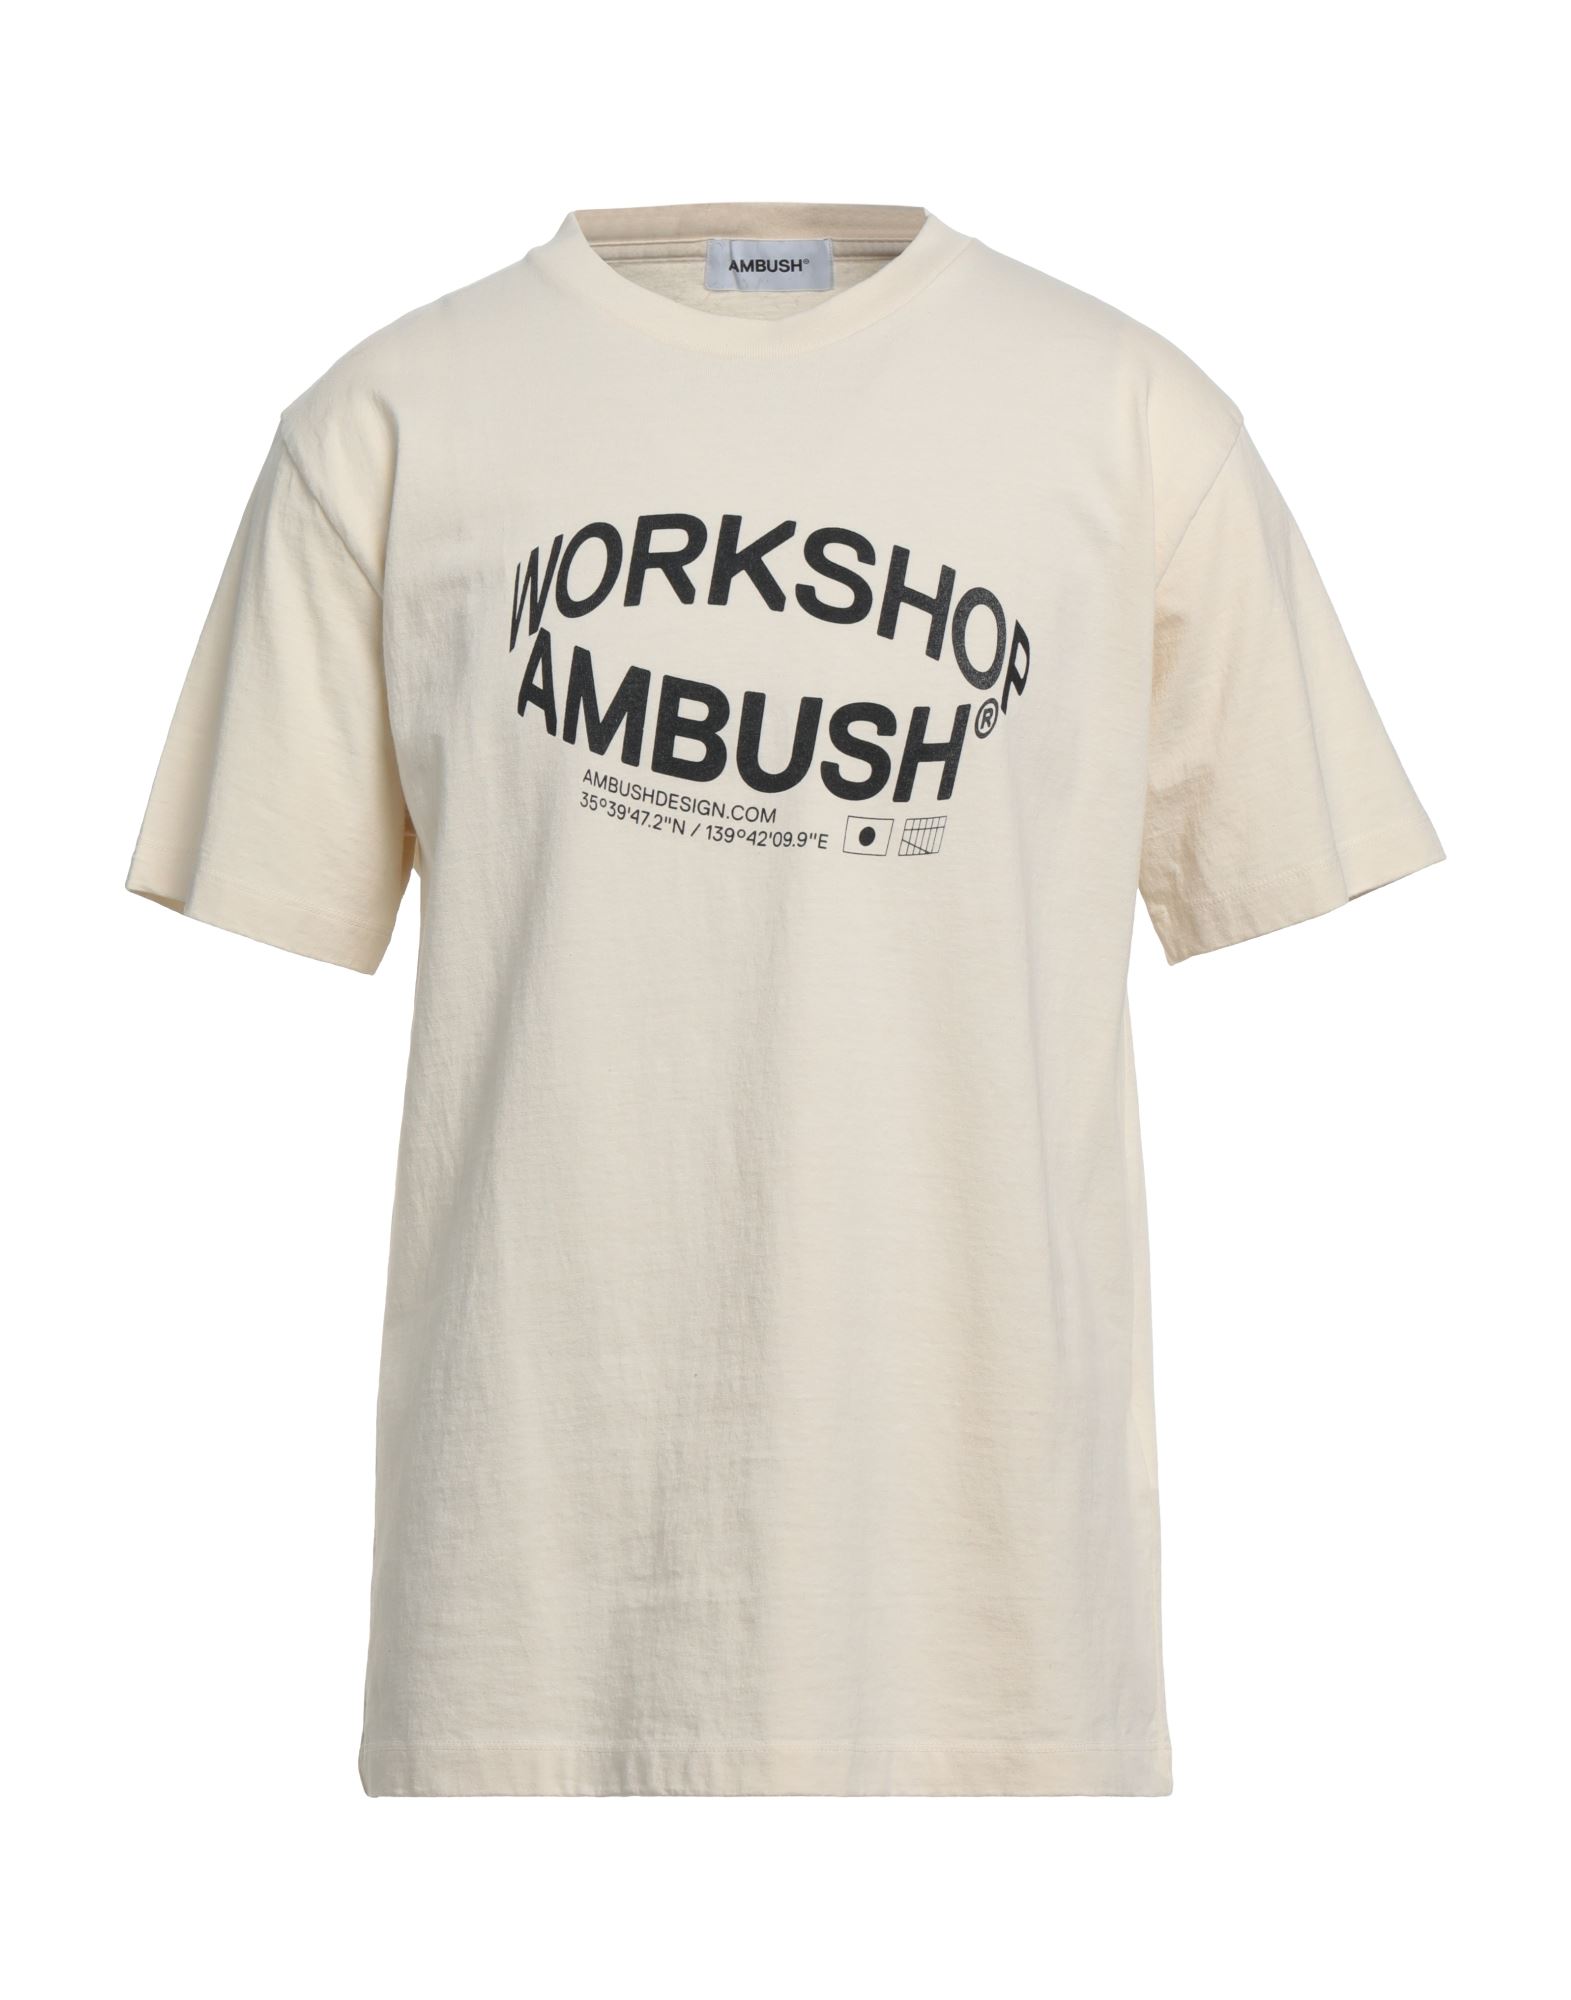 Ambush T-shirts In White